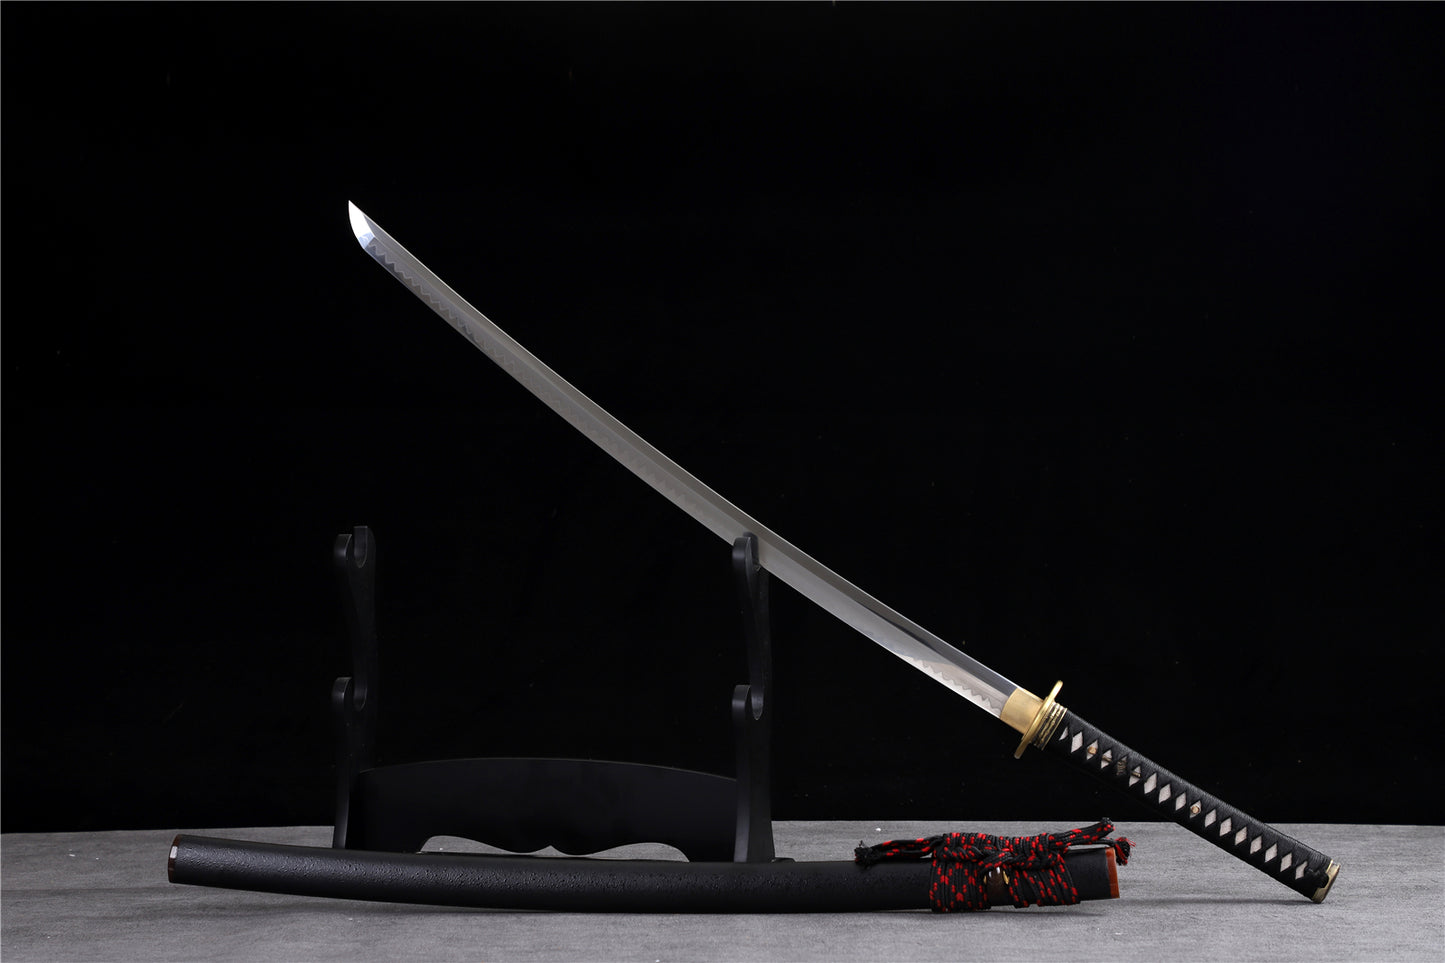 At ease samurai sword